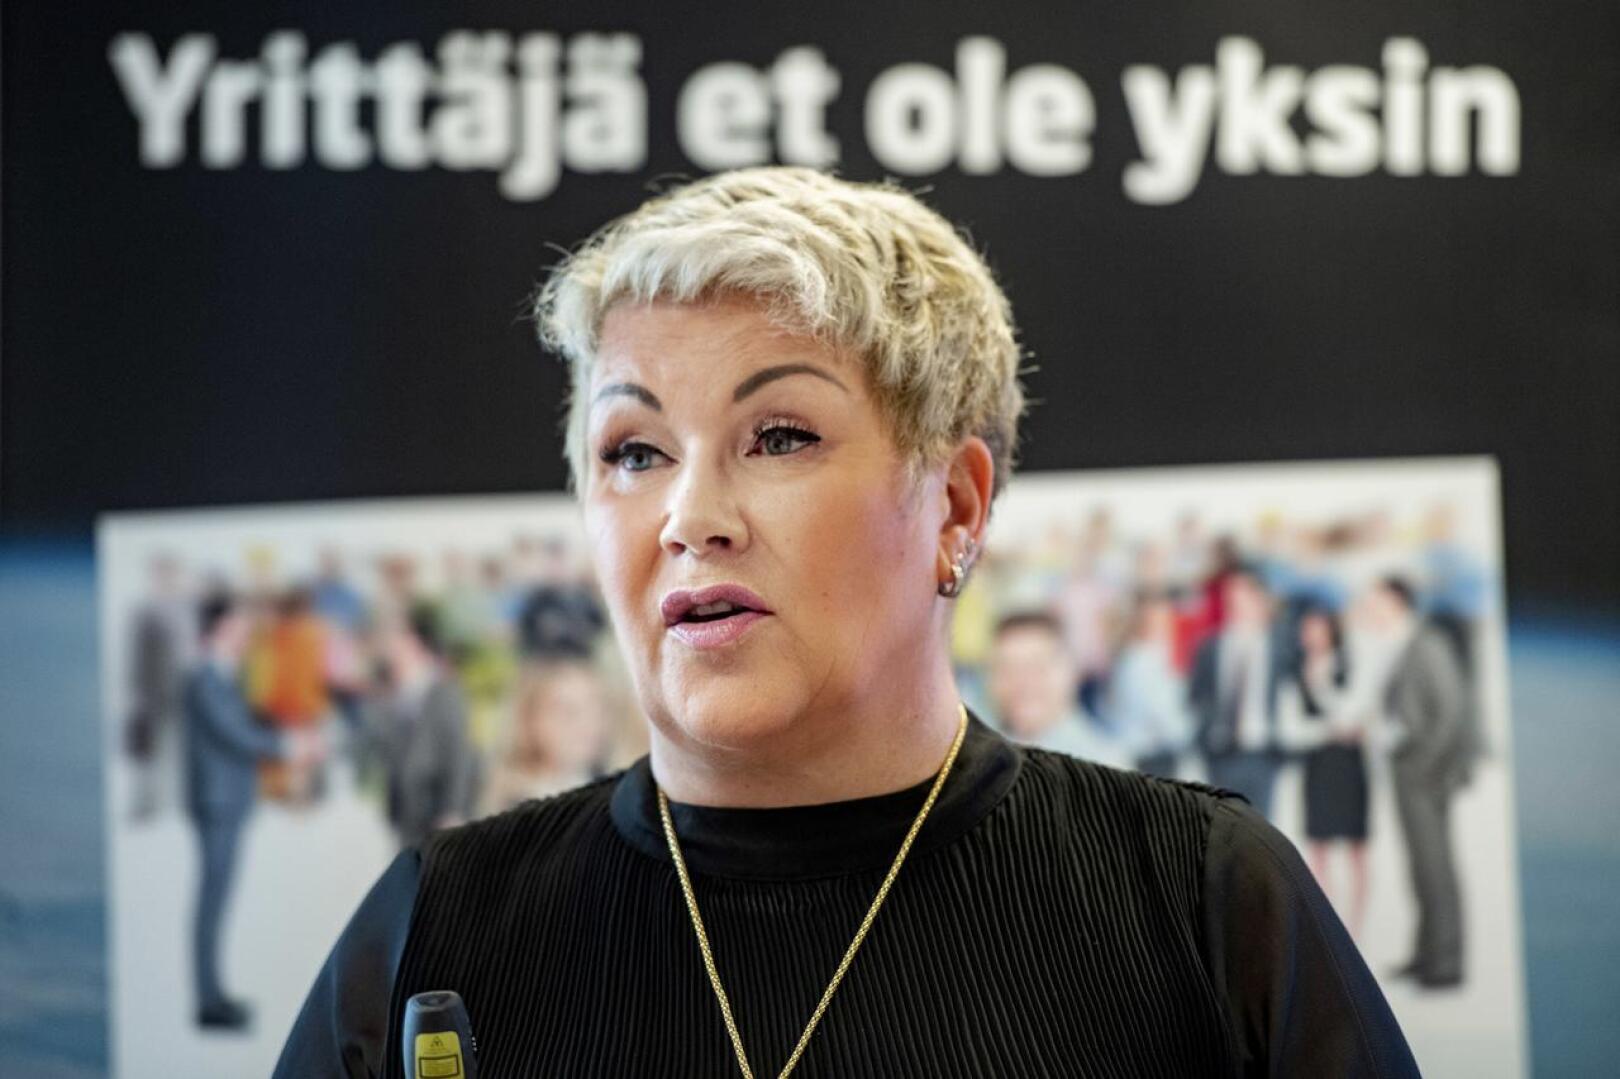 Keski-Pohjanmaan Yrittäjien toimitusjohtaja Mervi Järkkälä ei näe ongelmia KPO:n ja yrittäjien välisissä suhteissa.